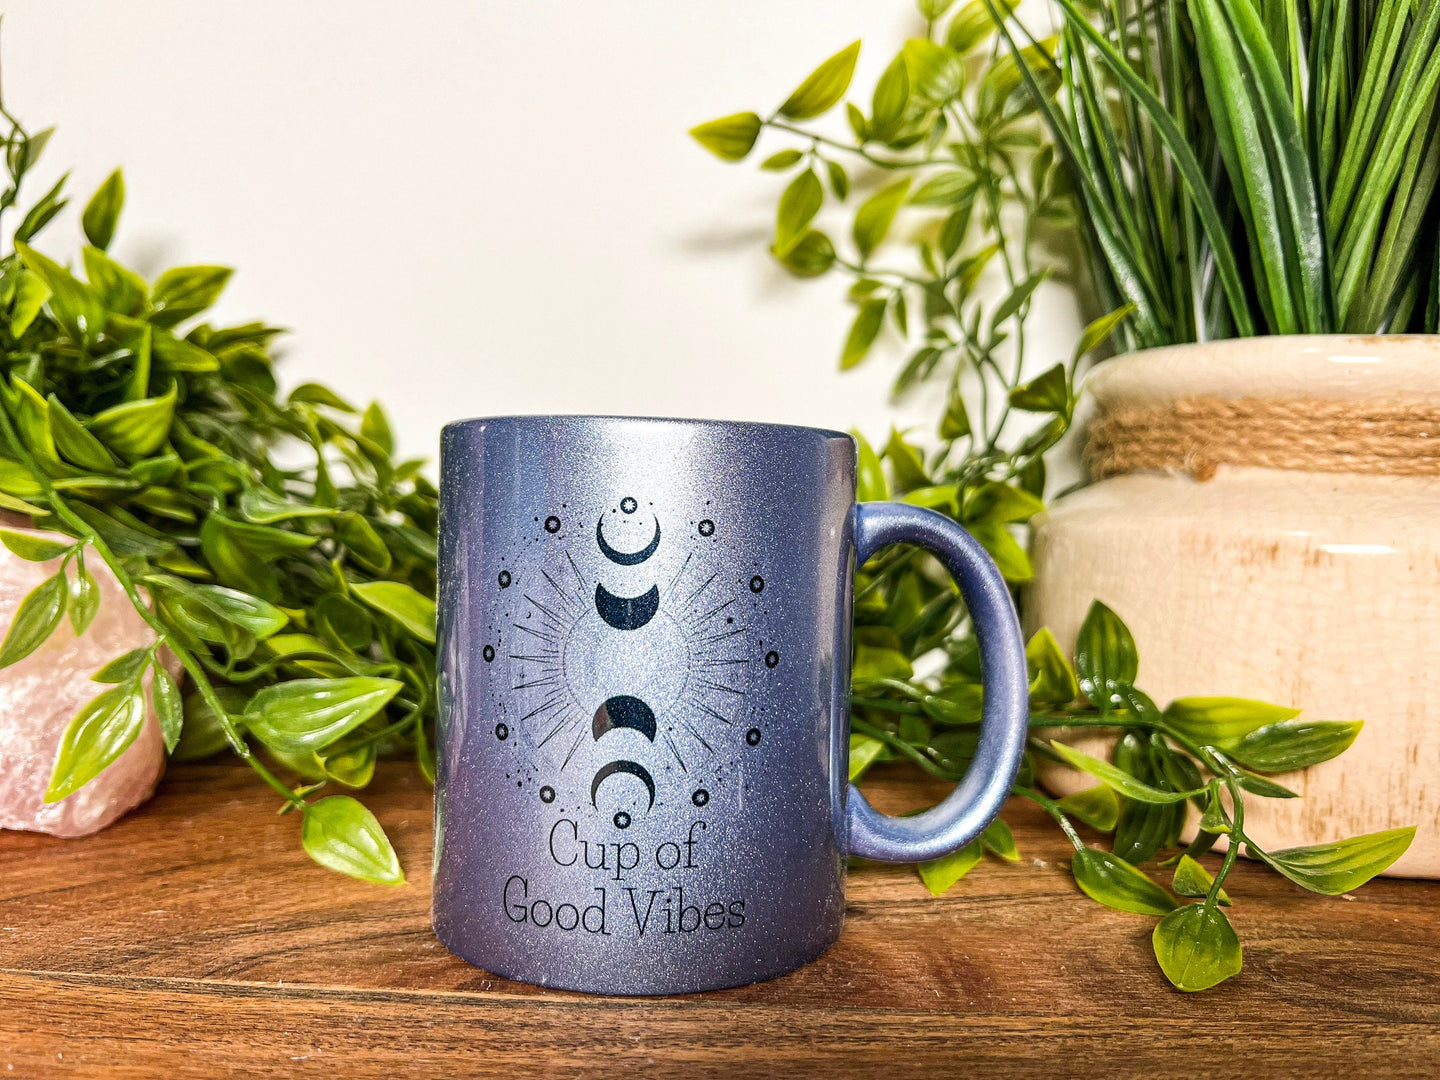 Moon Phase Mug, Good Vibes Cup, Cup of Good Vibes, Witchy Mug, Good Vibes Mug